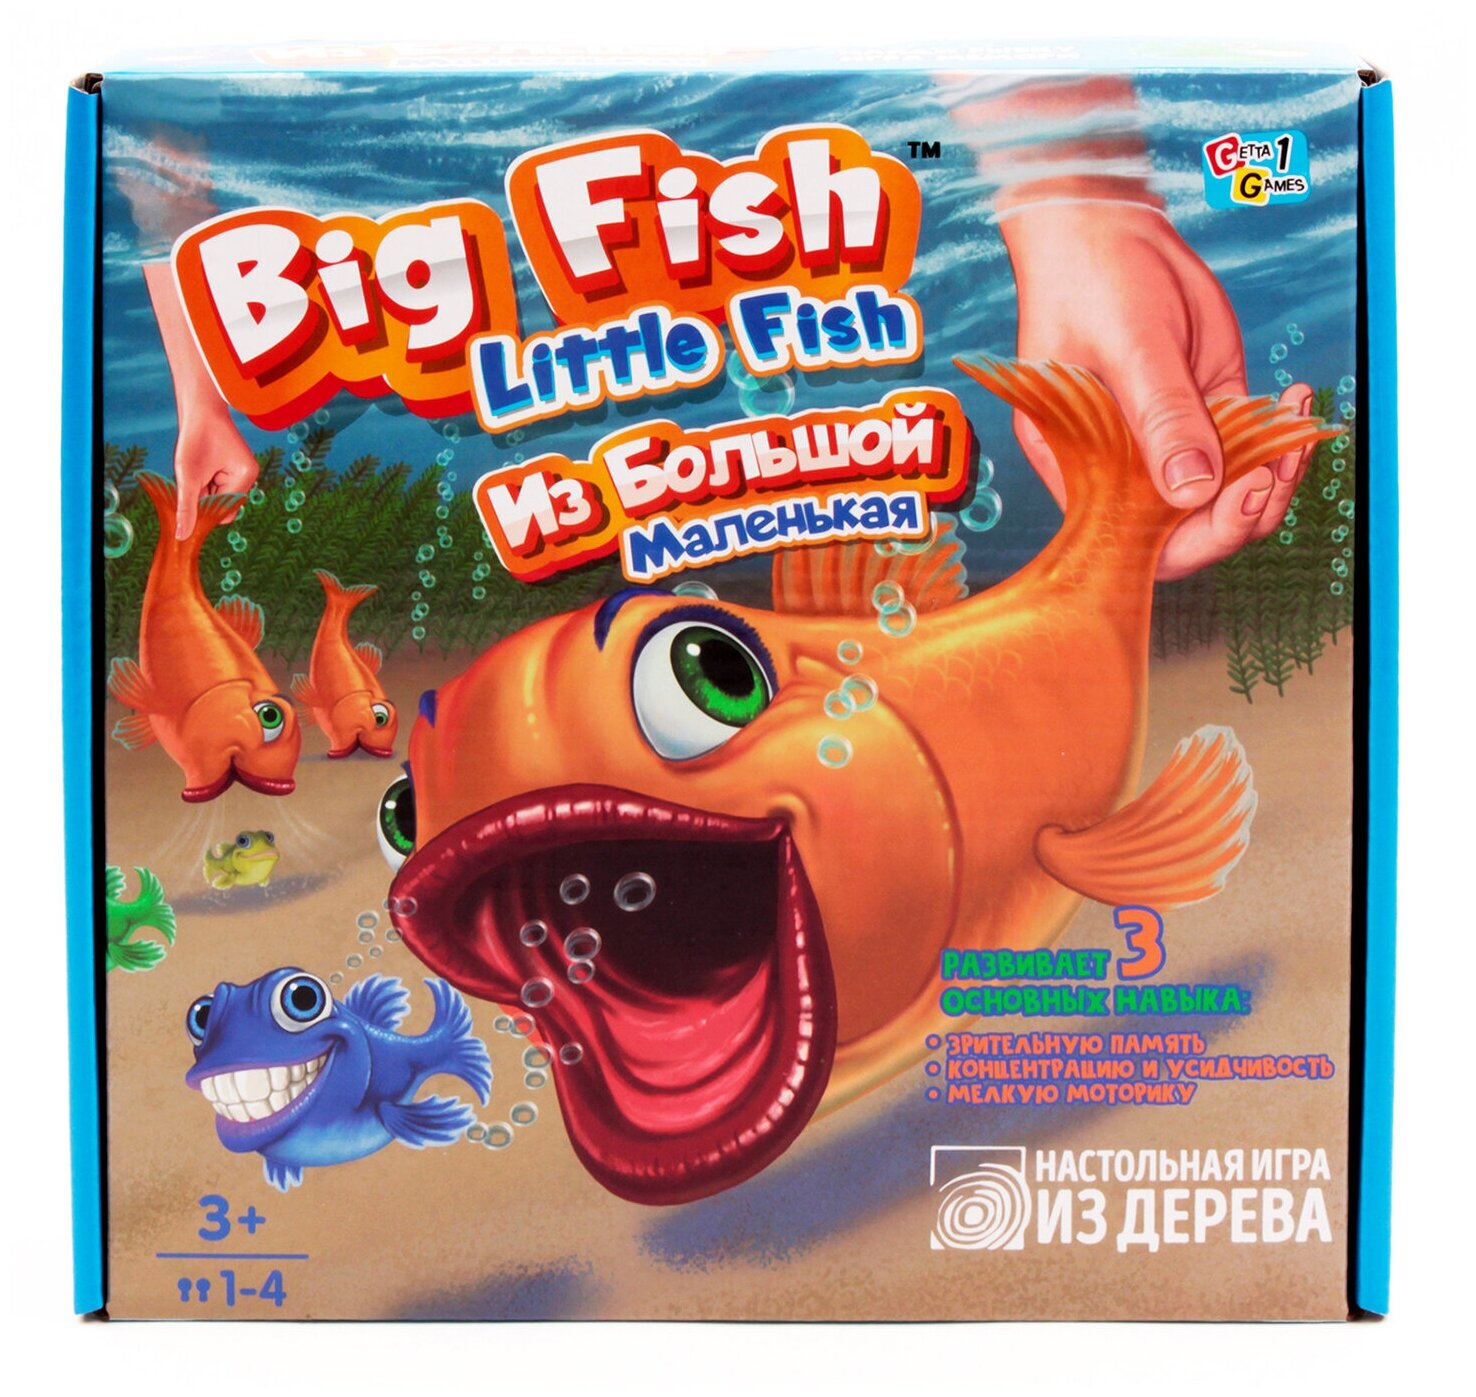 Настольная игра TreeToys "Big Fish Little Fish. Из большой маленькая" Unknown - фото №7